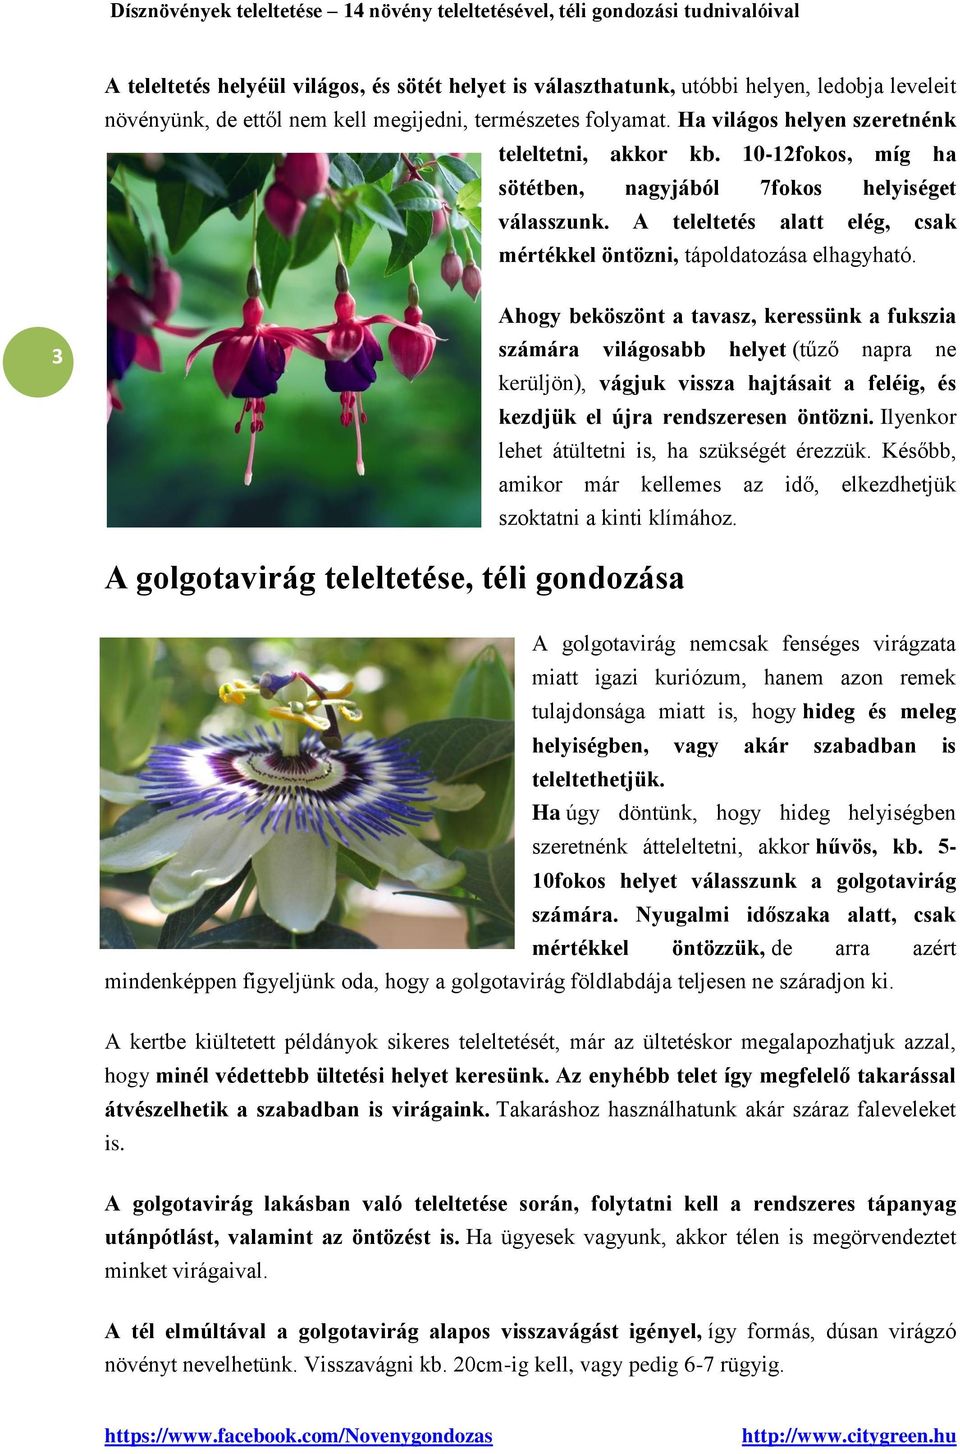 Dísznövények teleltetése - PDF Ingyenes letöltés